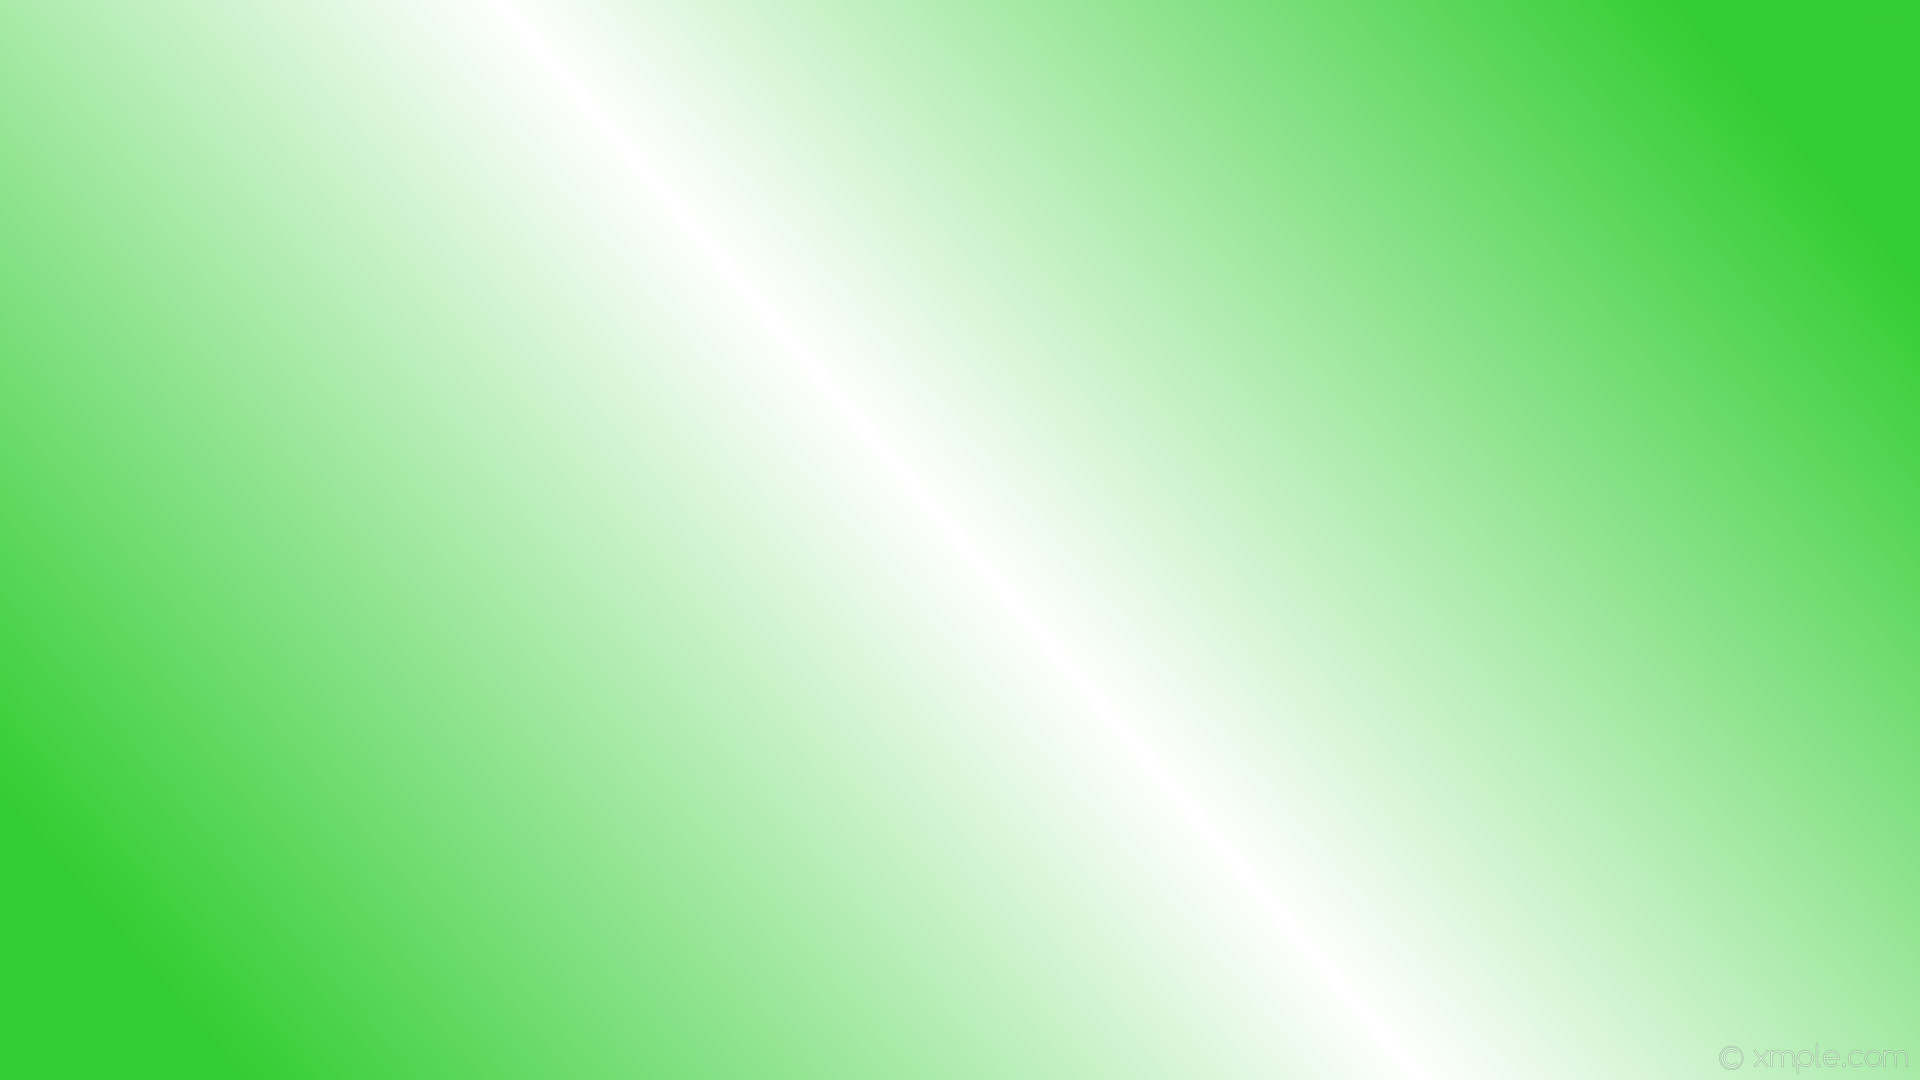 1920x1080 wallpaper gradient green highlight linear white lime green #32cd32 #ffffff  195Â° 50%